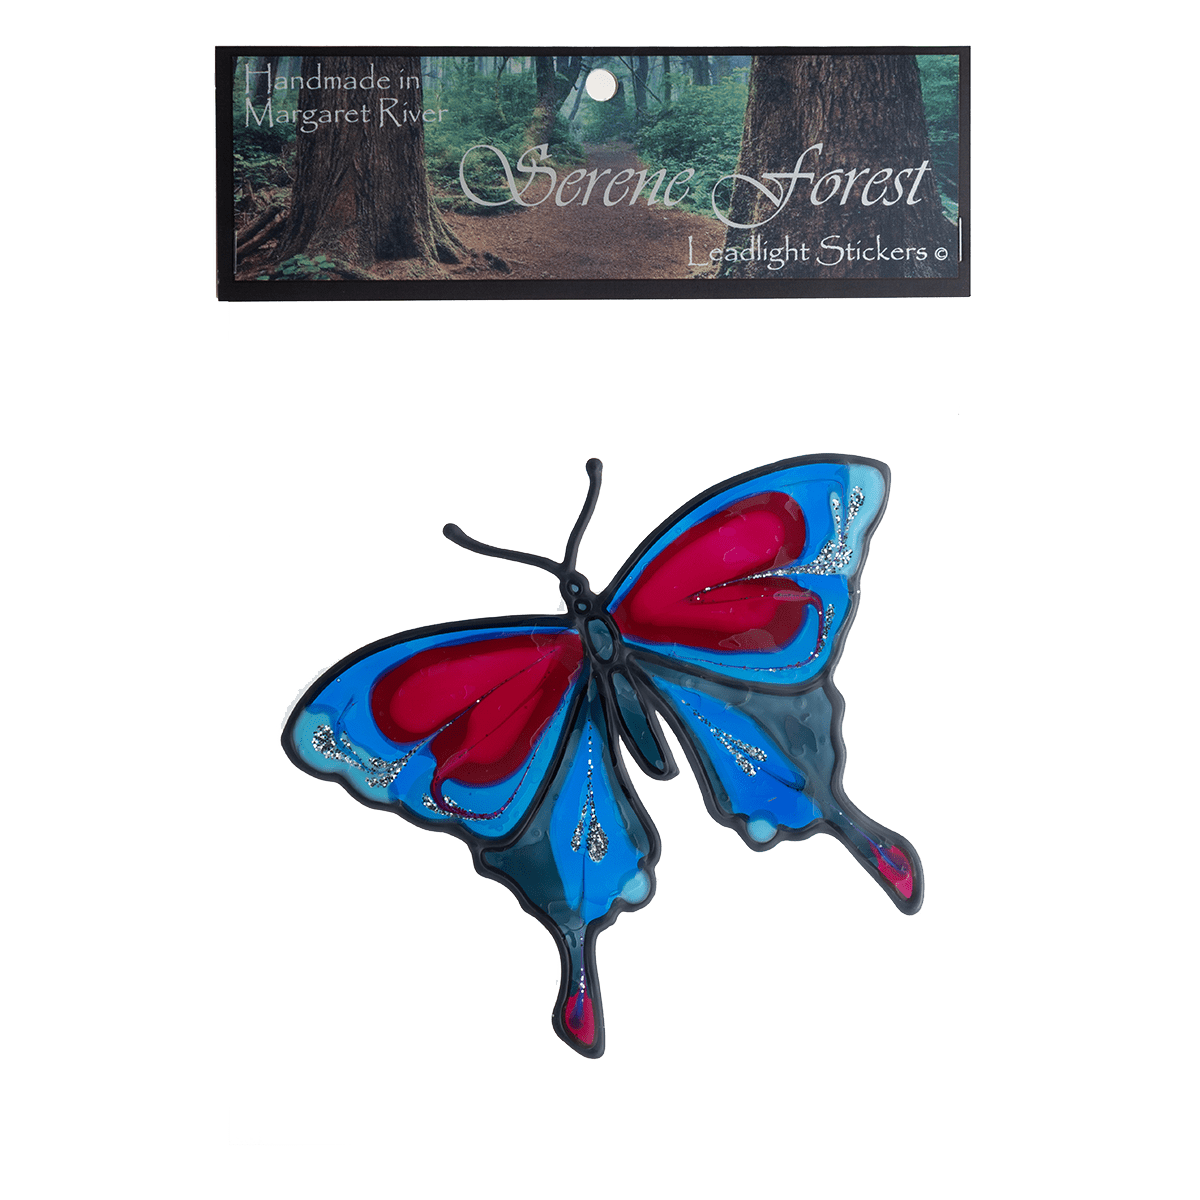 A butterfly leadlight sticker